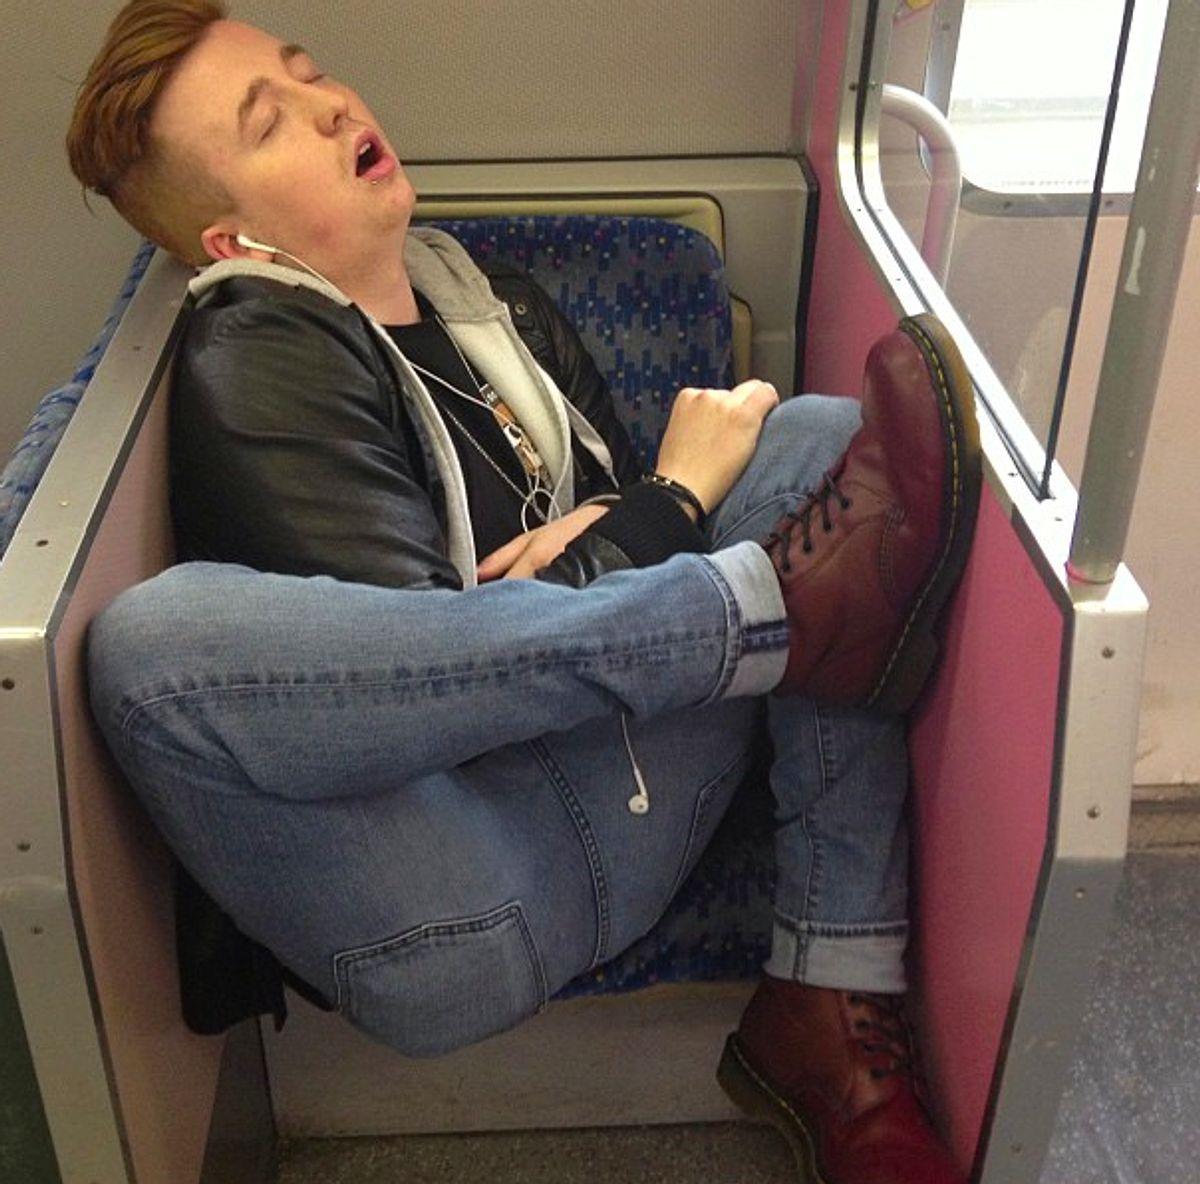 Спящий человек в поезде